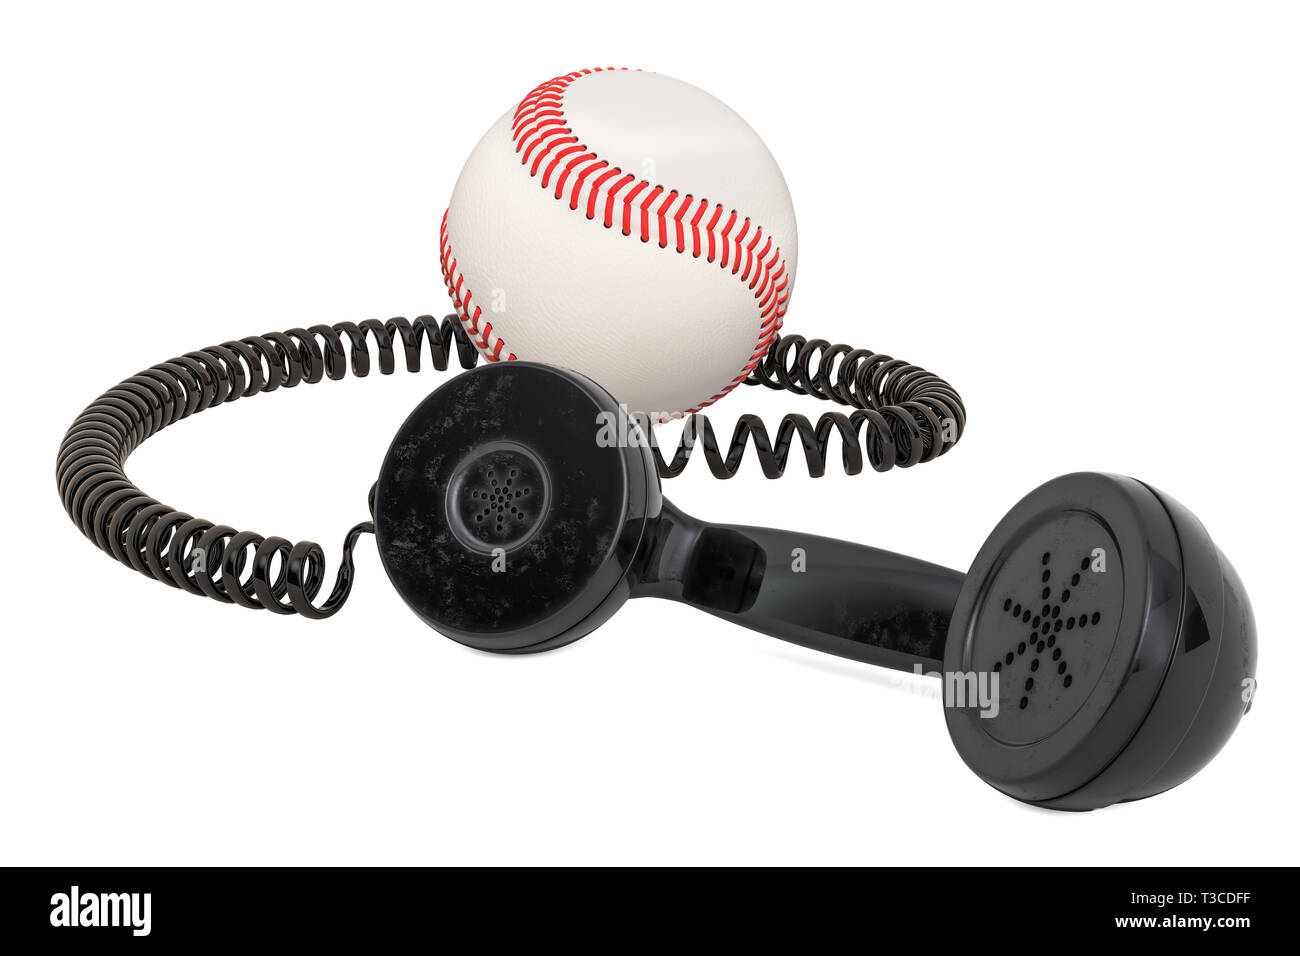 Ricevitore telefonico con palla da baseball, rendering 3D isolati su sfondo bianco Foto Stock